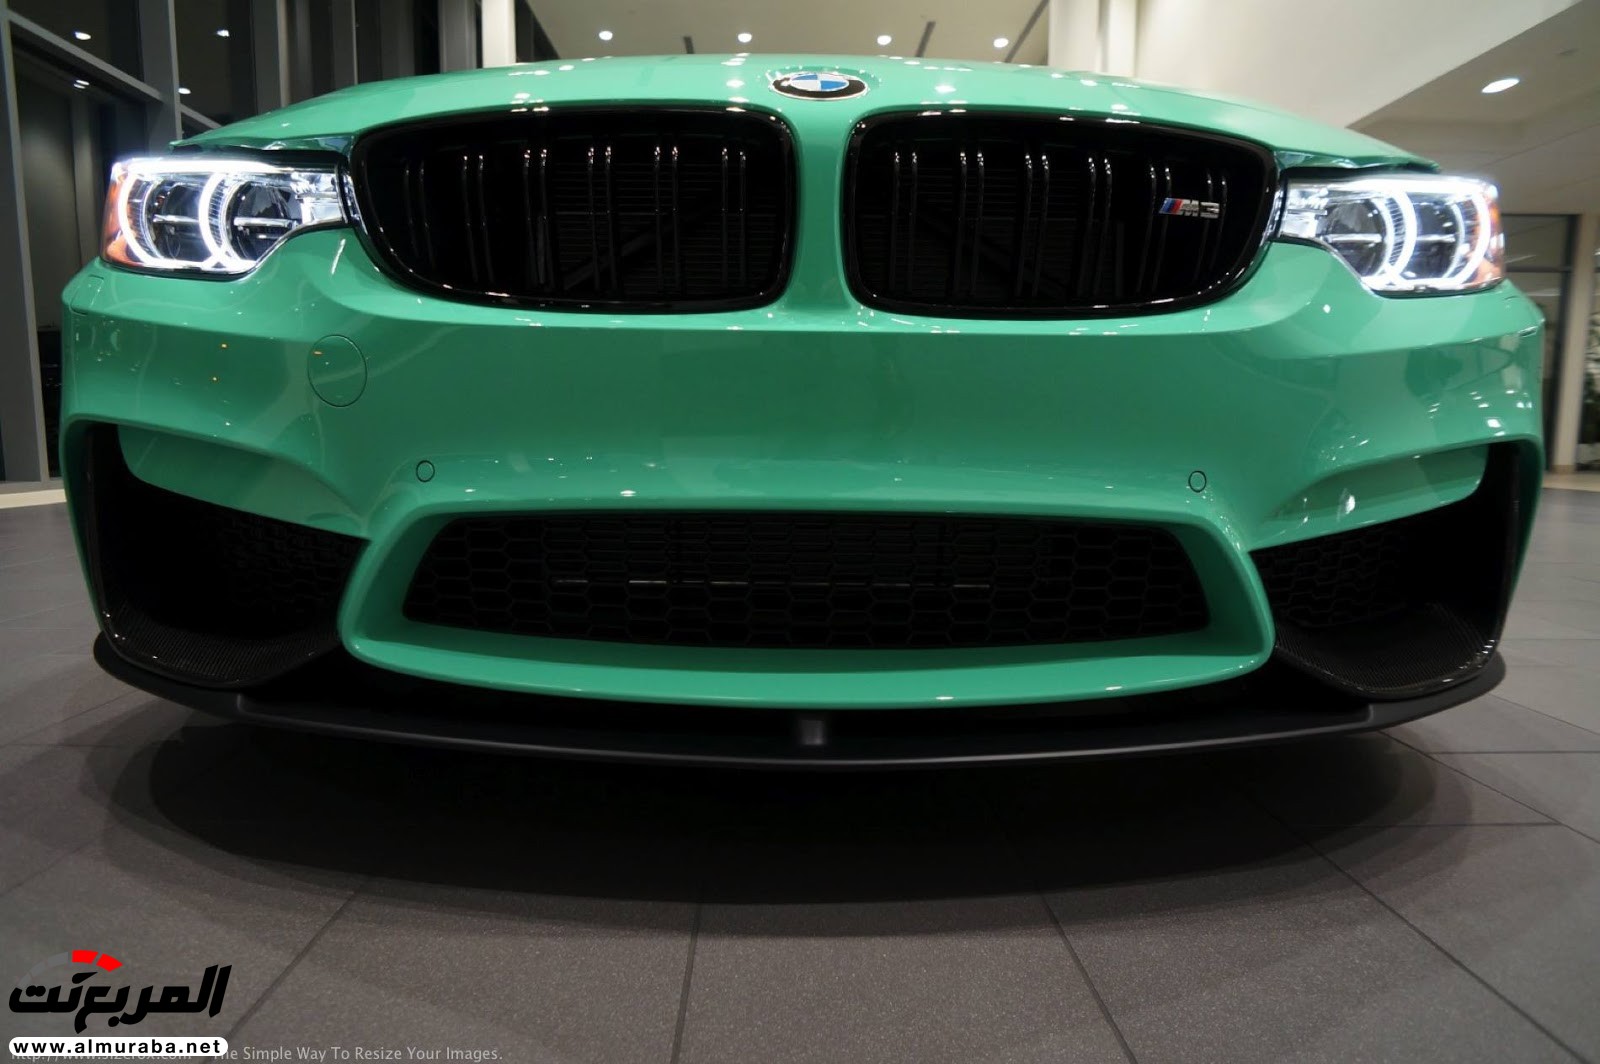 "بالصور" شاهد "بي إم دبليو" F80 M3 الخاصة بطلاء النعناع الأخضر BMW 111